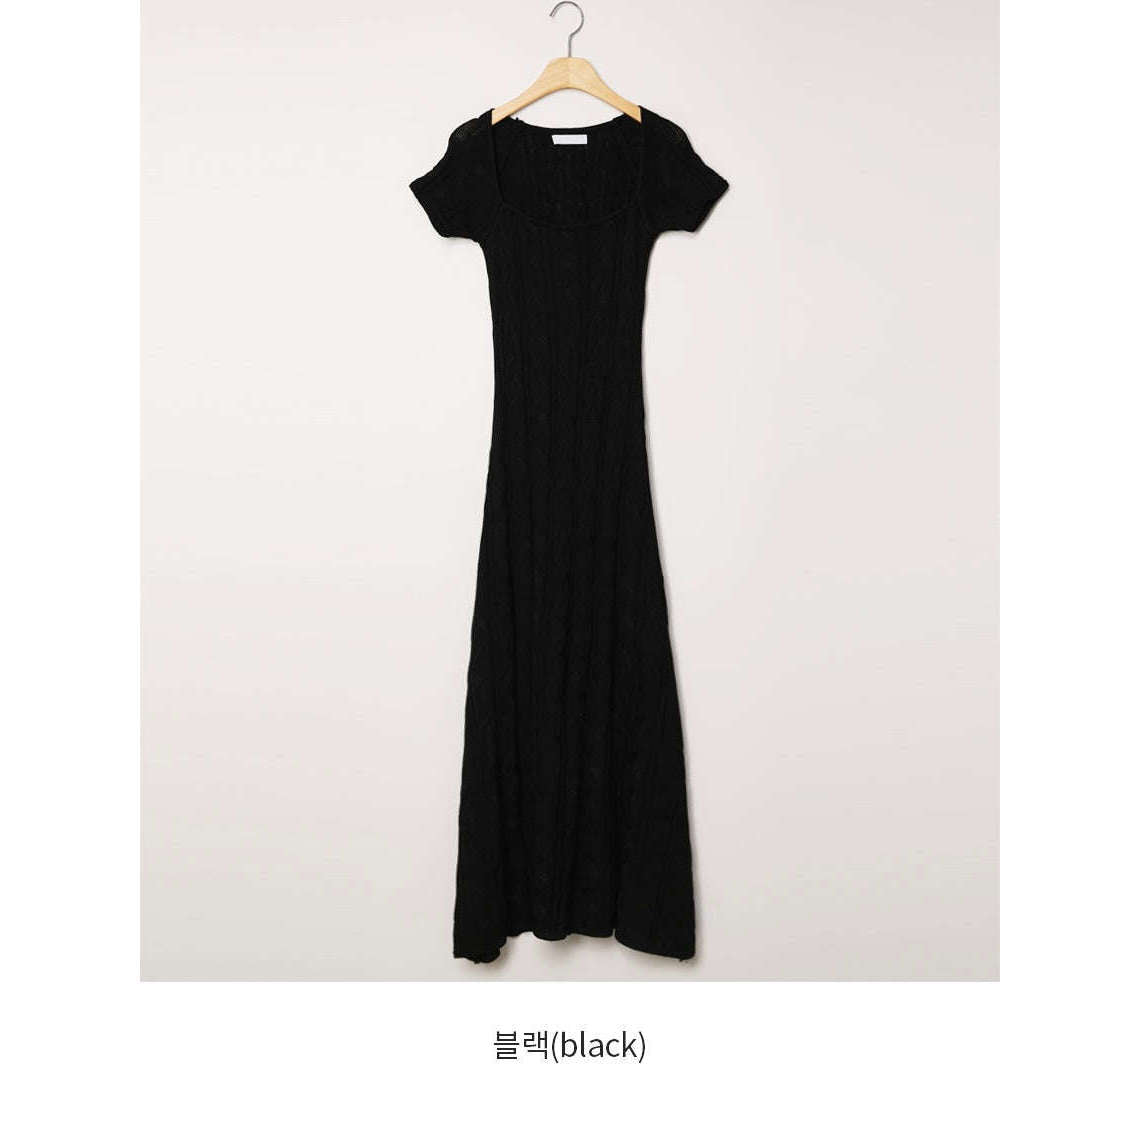 MUMMY.cc:麻花編織修身長針織連身裙